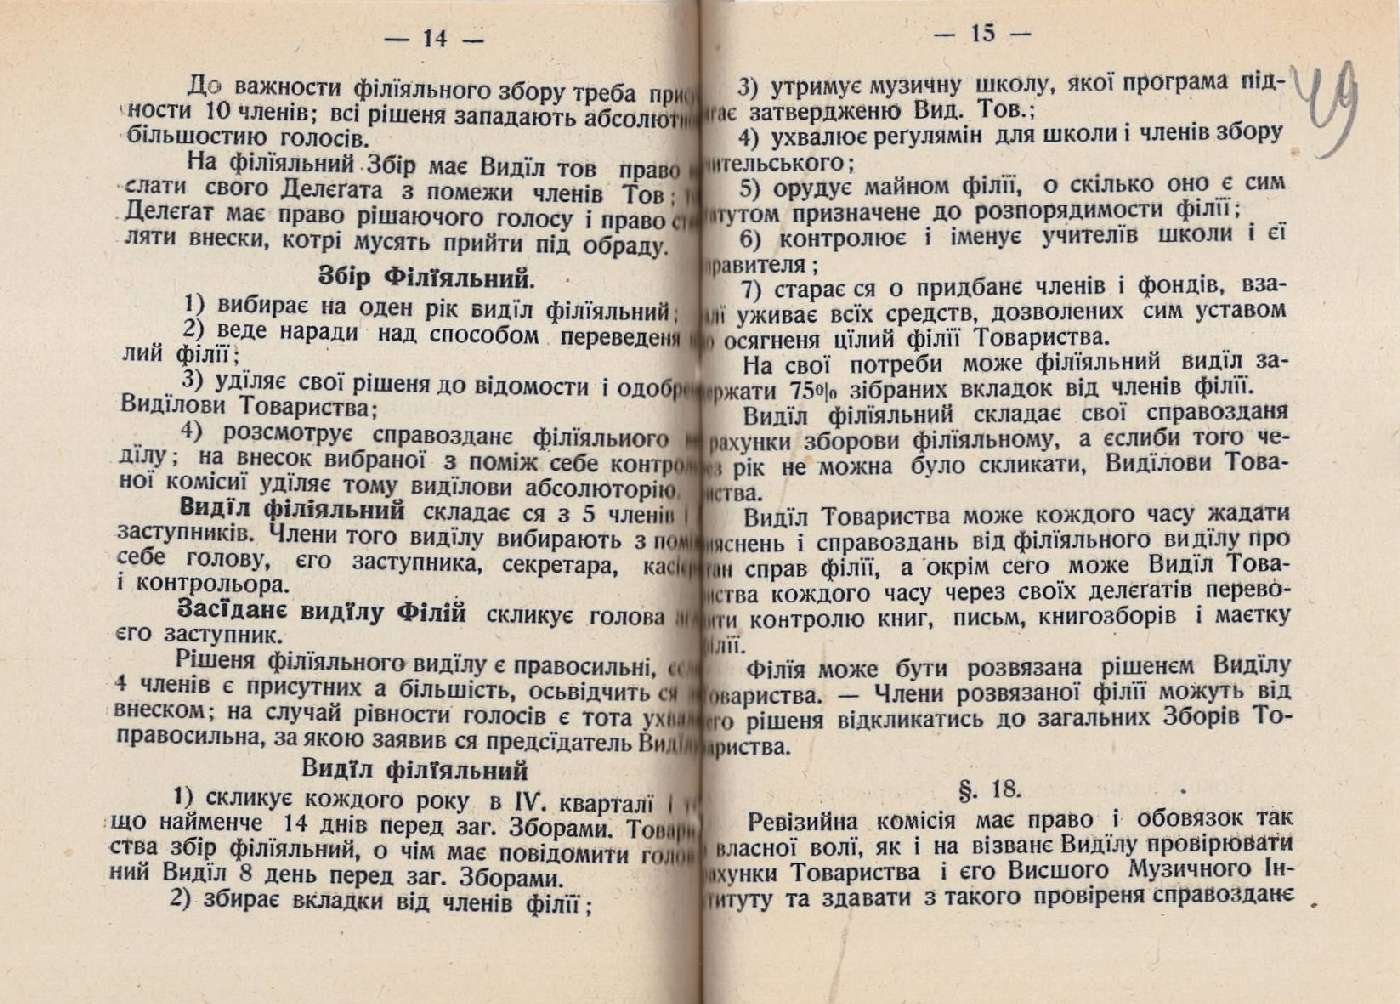 Статут Музичного товариства імени Миколи Лисенка у Львові. 1 серпня 1921 р.